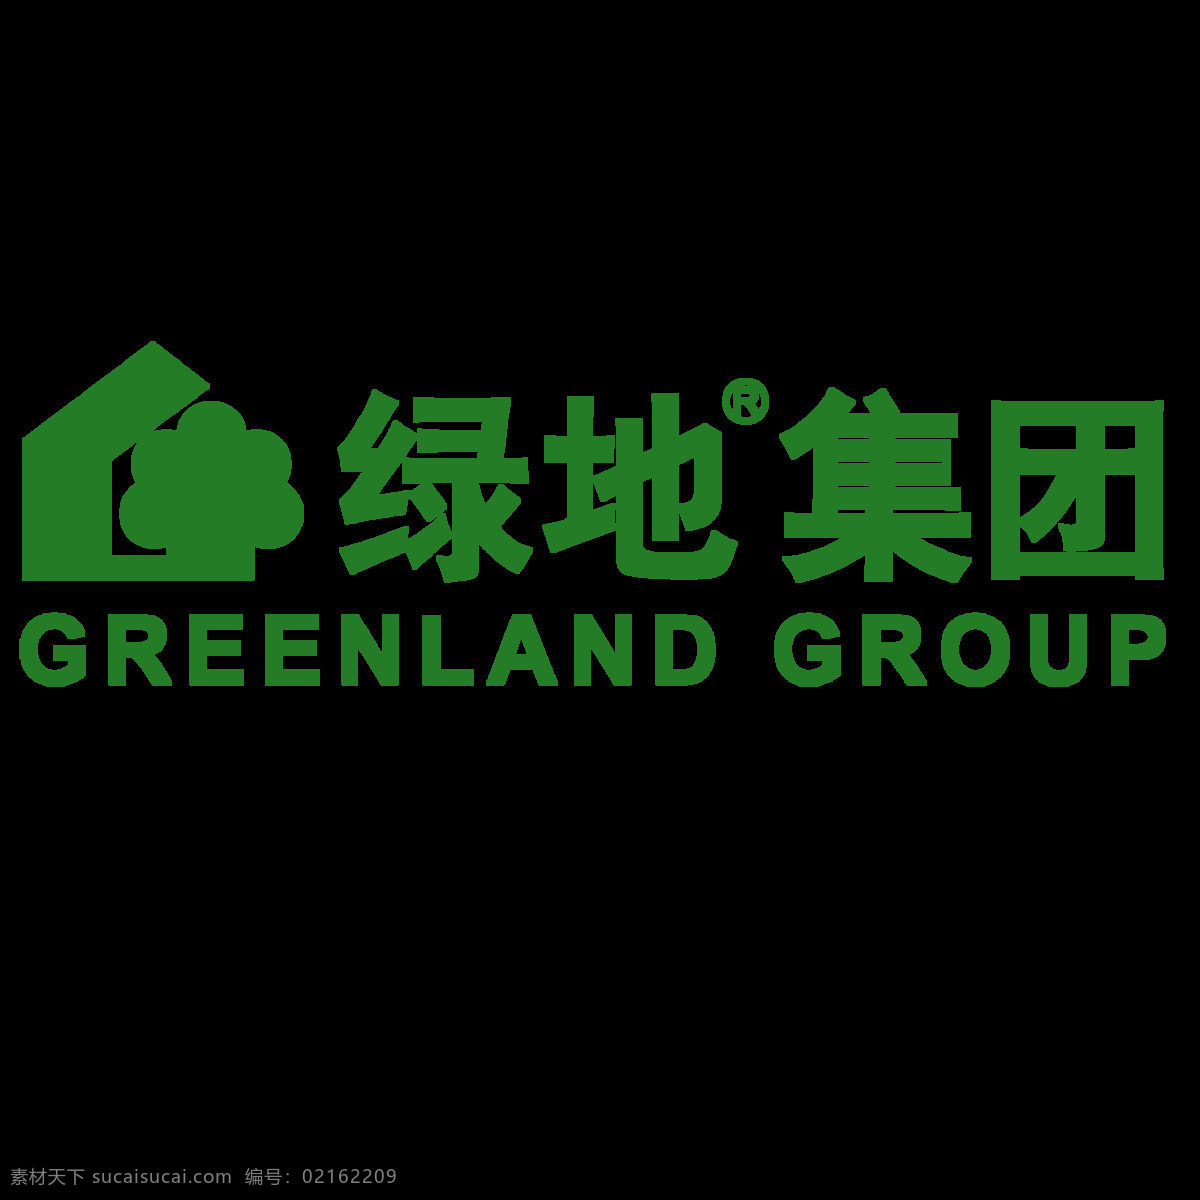 绿地集团图片 绿地集团 绿地 绿地标志 绿地集团标志 绿地logo 企业logo 标志图标 企业 logo 标志